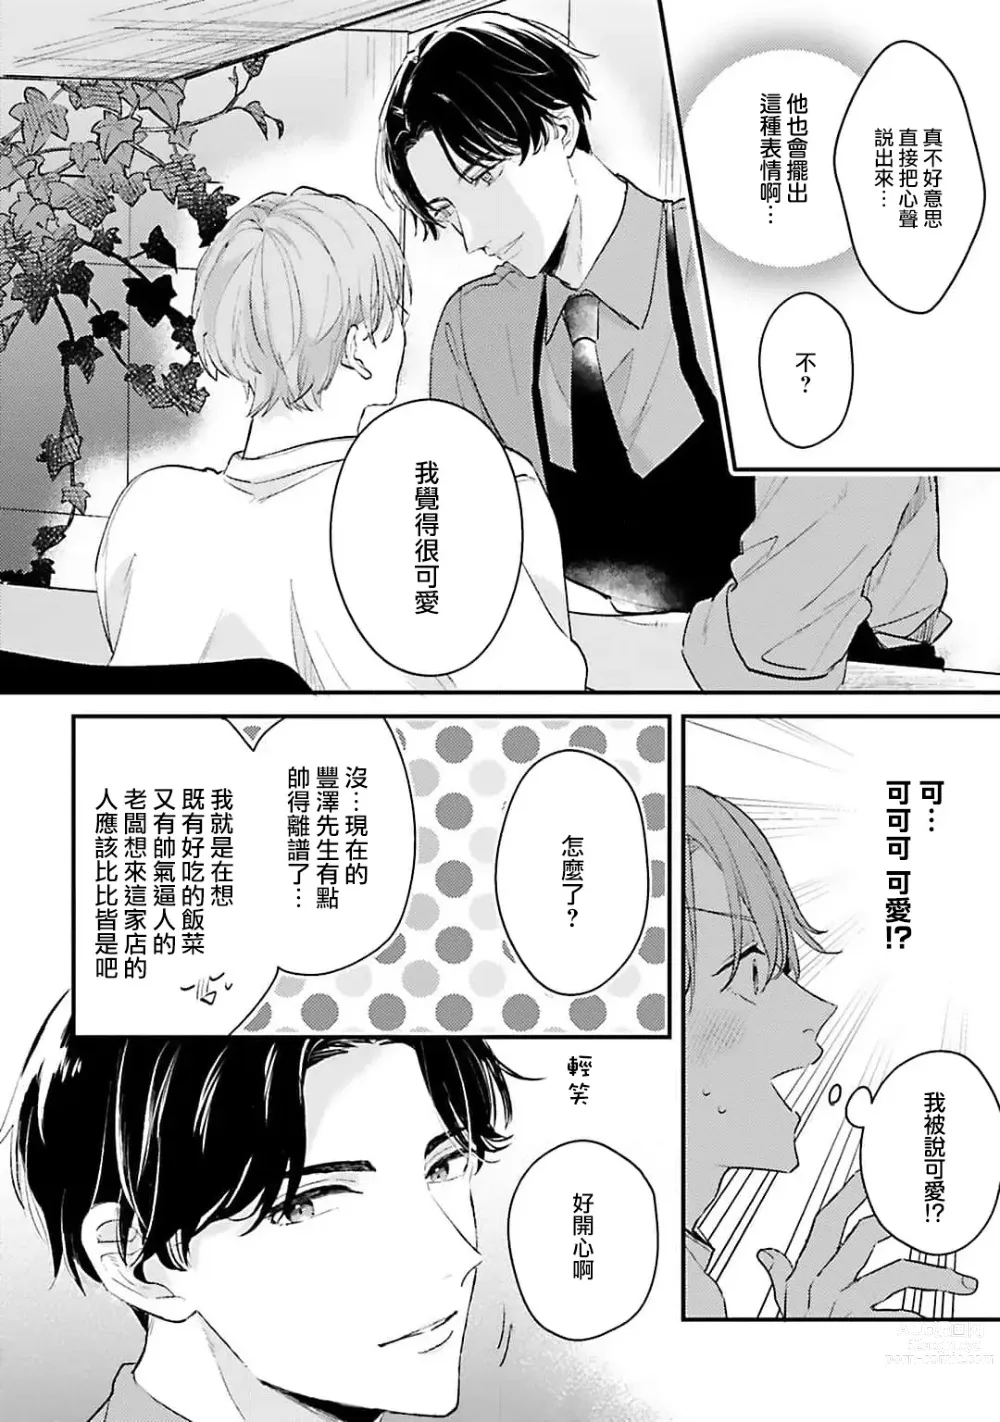 Page 13 of manga 绽放的恋爱皆为醉与甜1